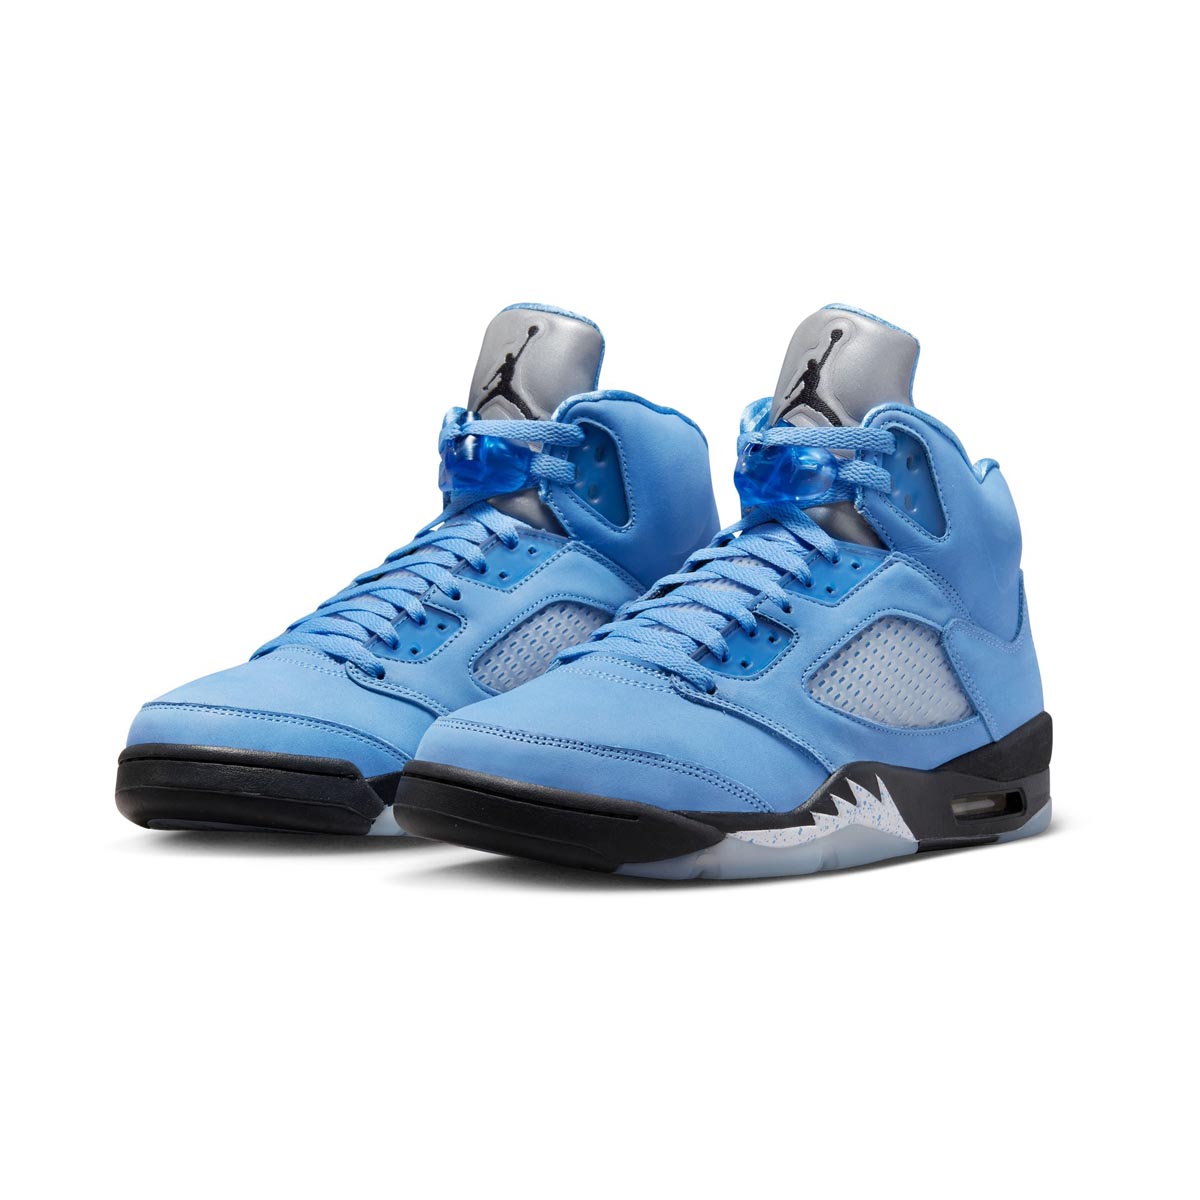 Air Jordan 5 Retro SE Men's Shoes | Millennium Shoes